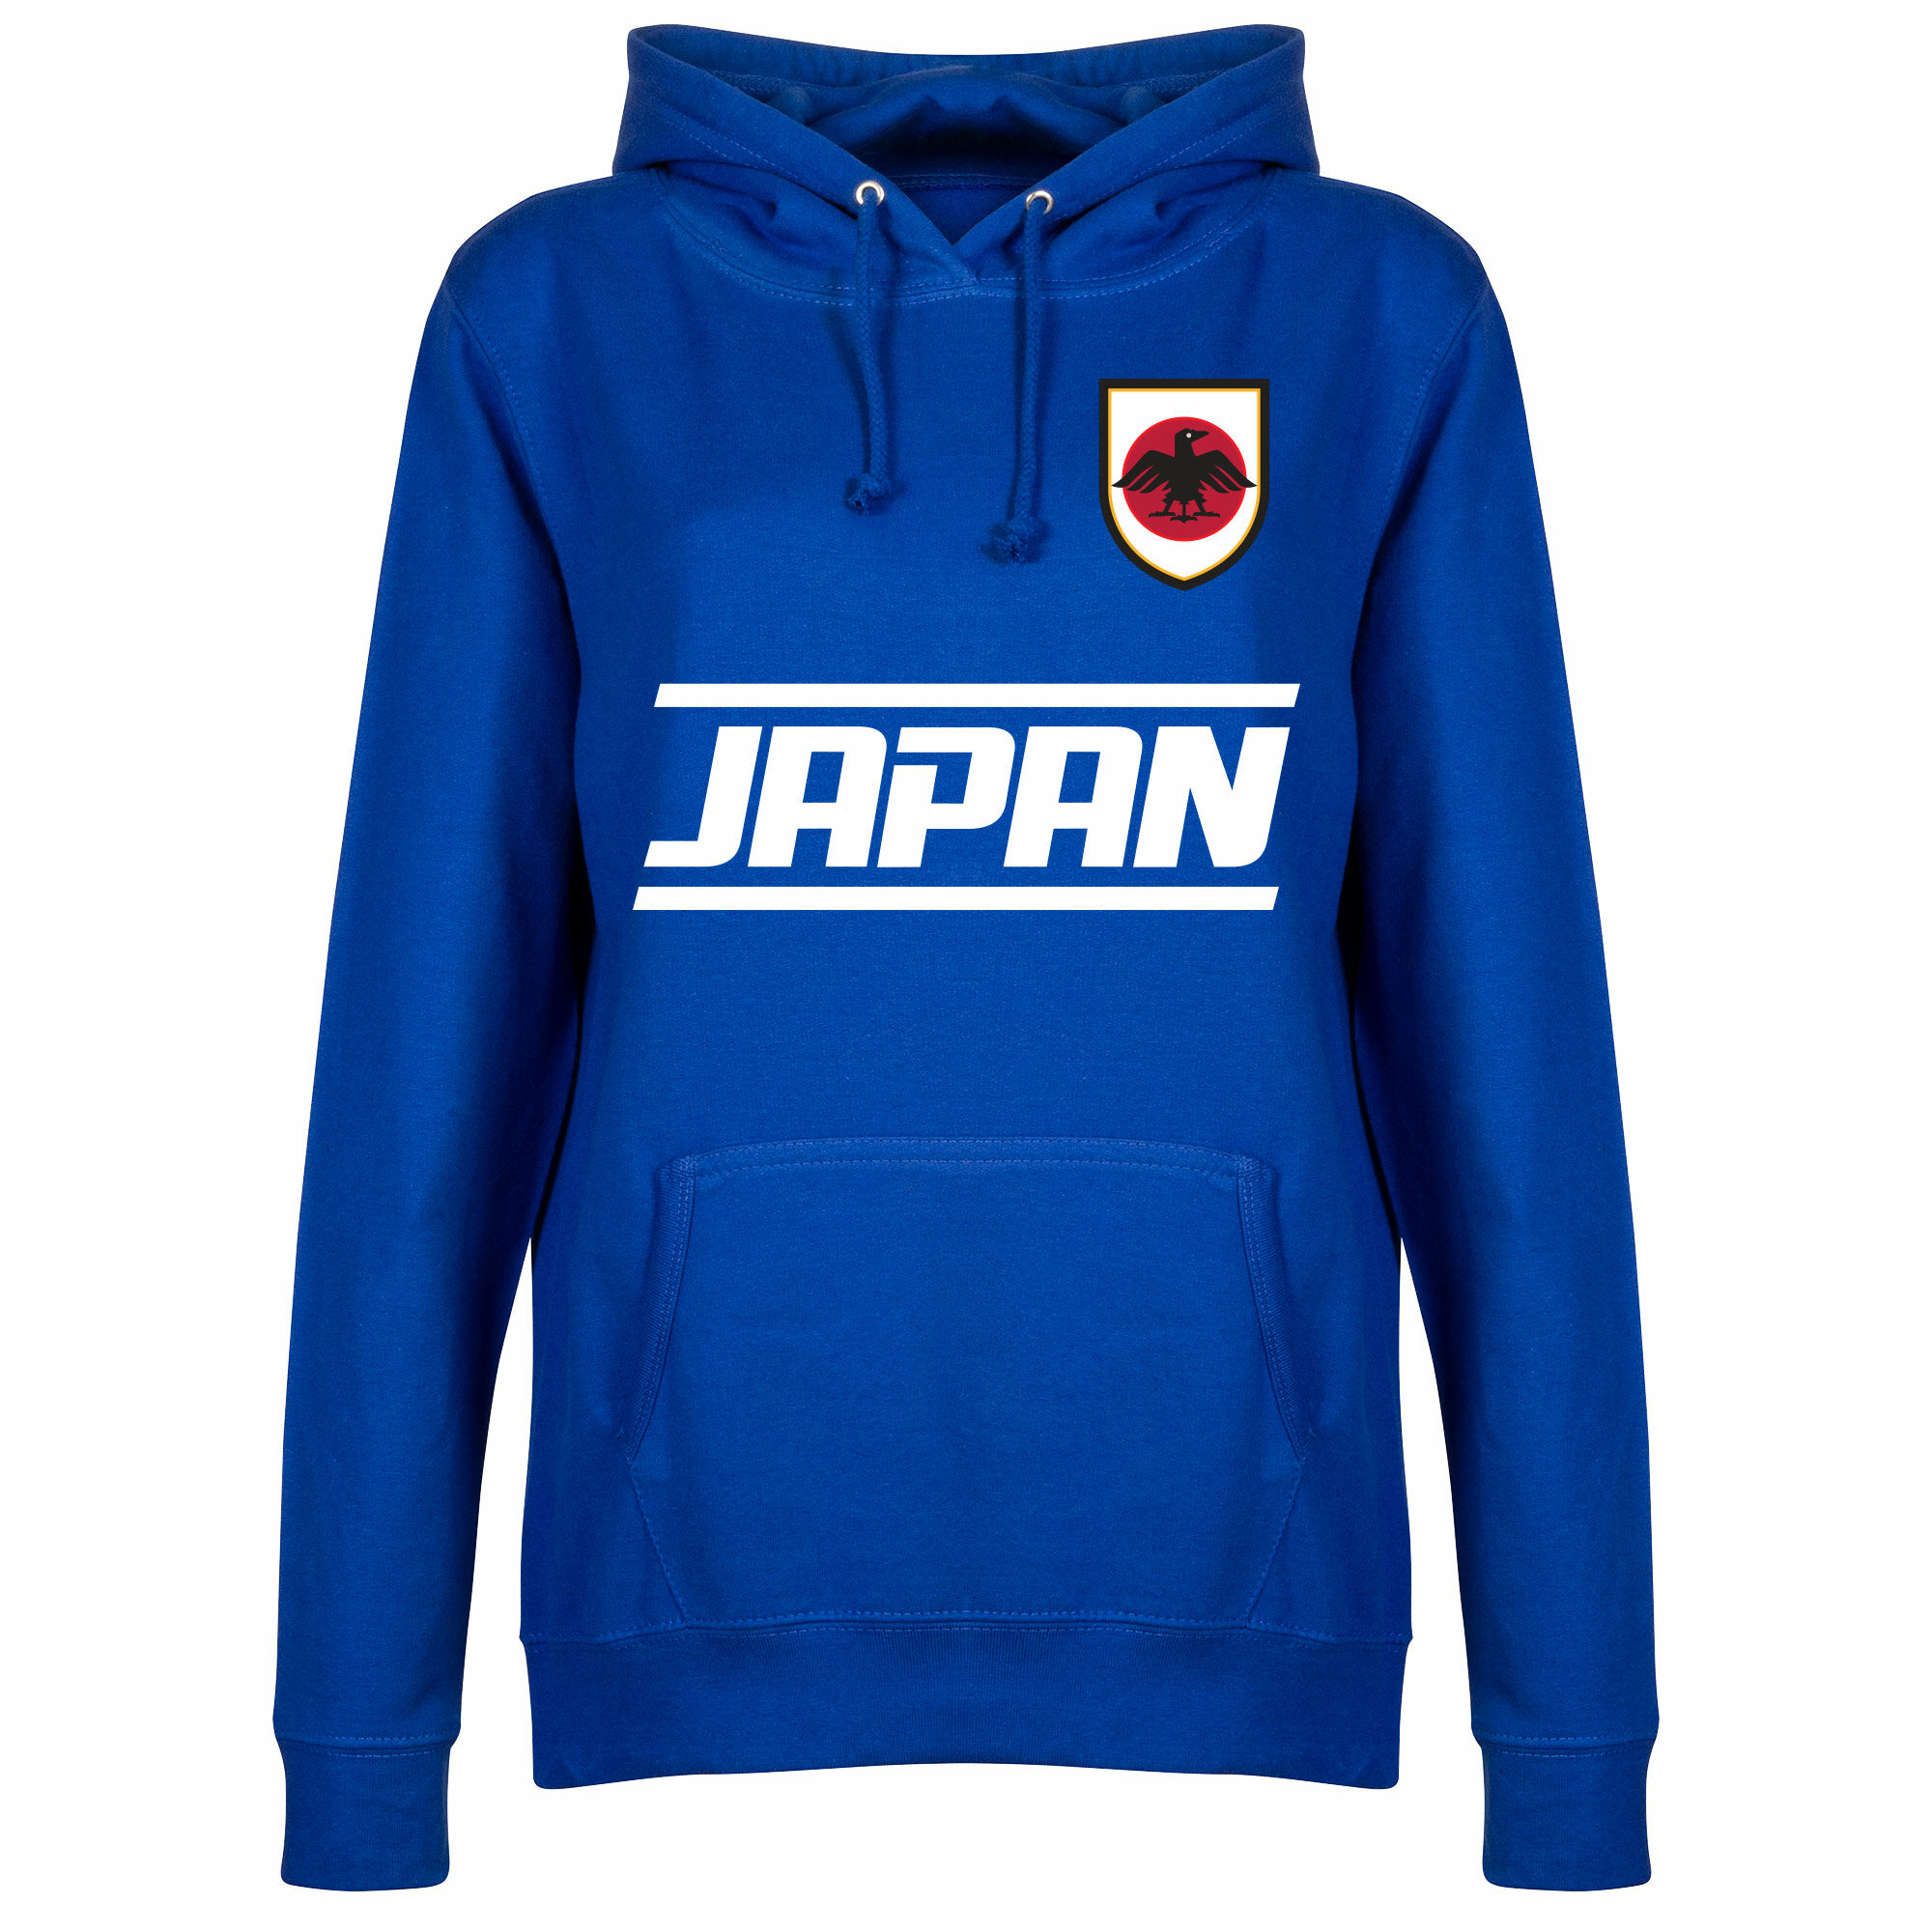 Japonsko - Mikina s kapucí dámská - modrá